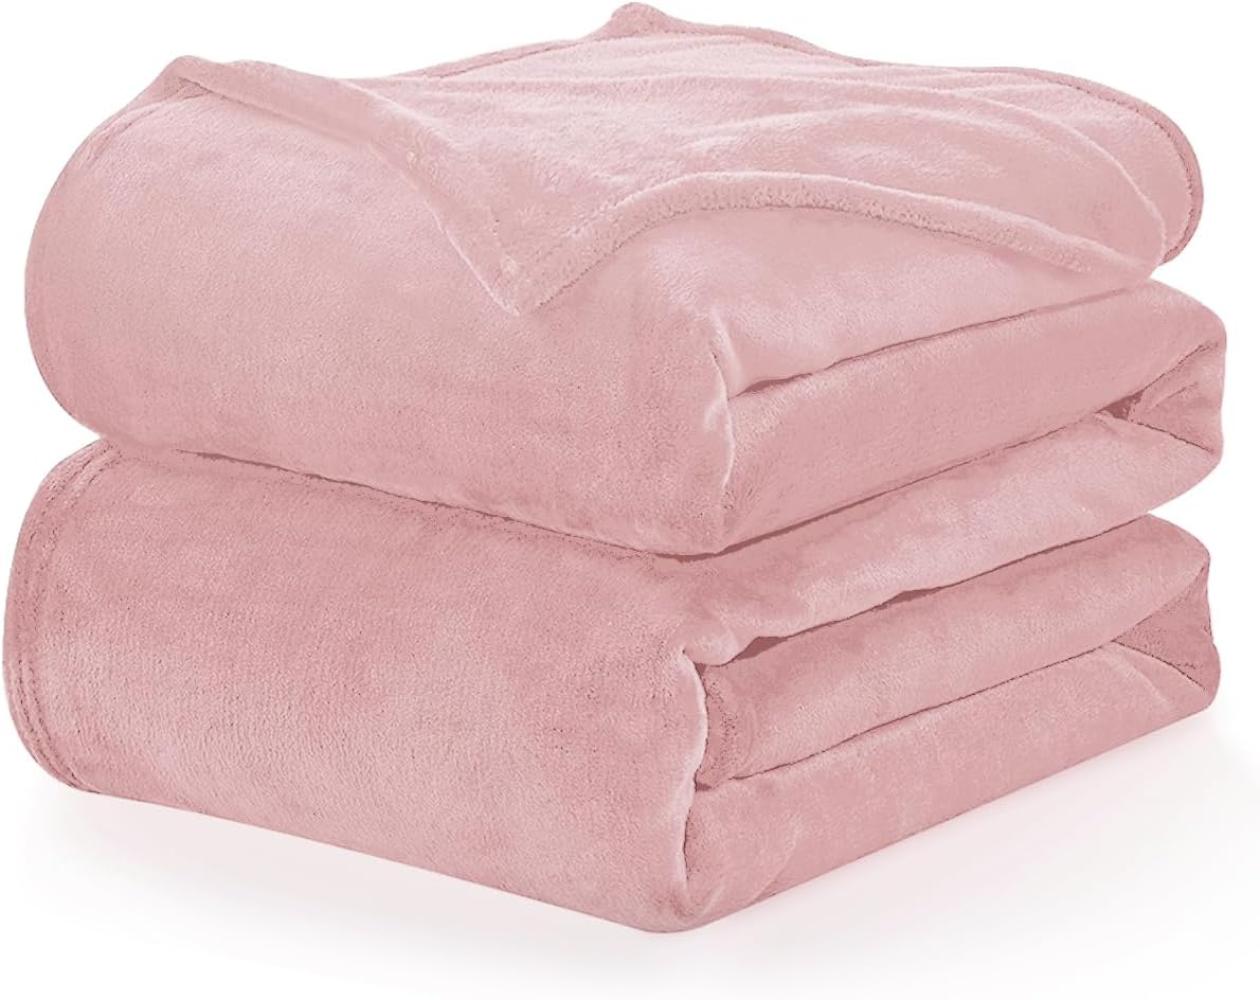 WAVVE Kuscheldecke Flauschige Decke Rosa 150x200 cm - XL Fleecedecke Weich und Warm Als Sofadecke, Wohndecke oder Tagesdecke, Decken für Couch Bild 1